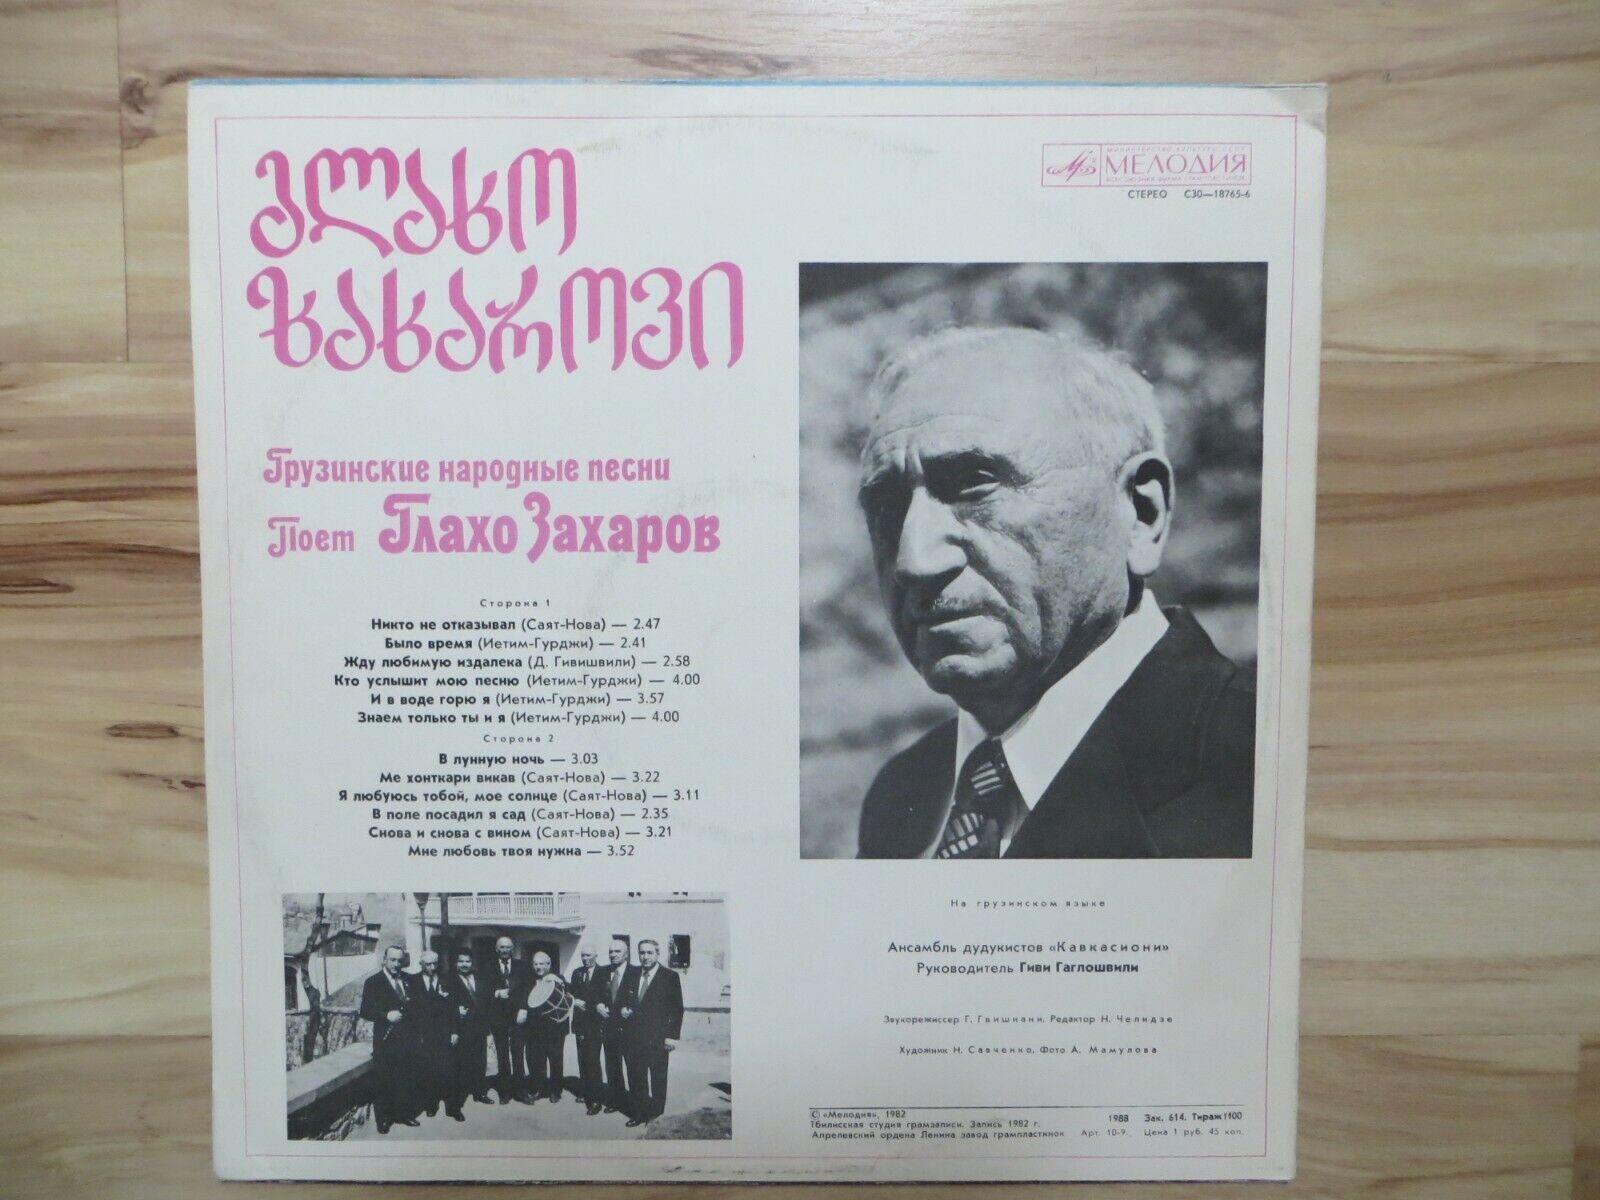 Глахо Захаров поёт грузинские народные песни